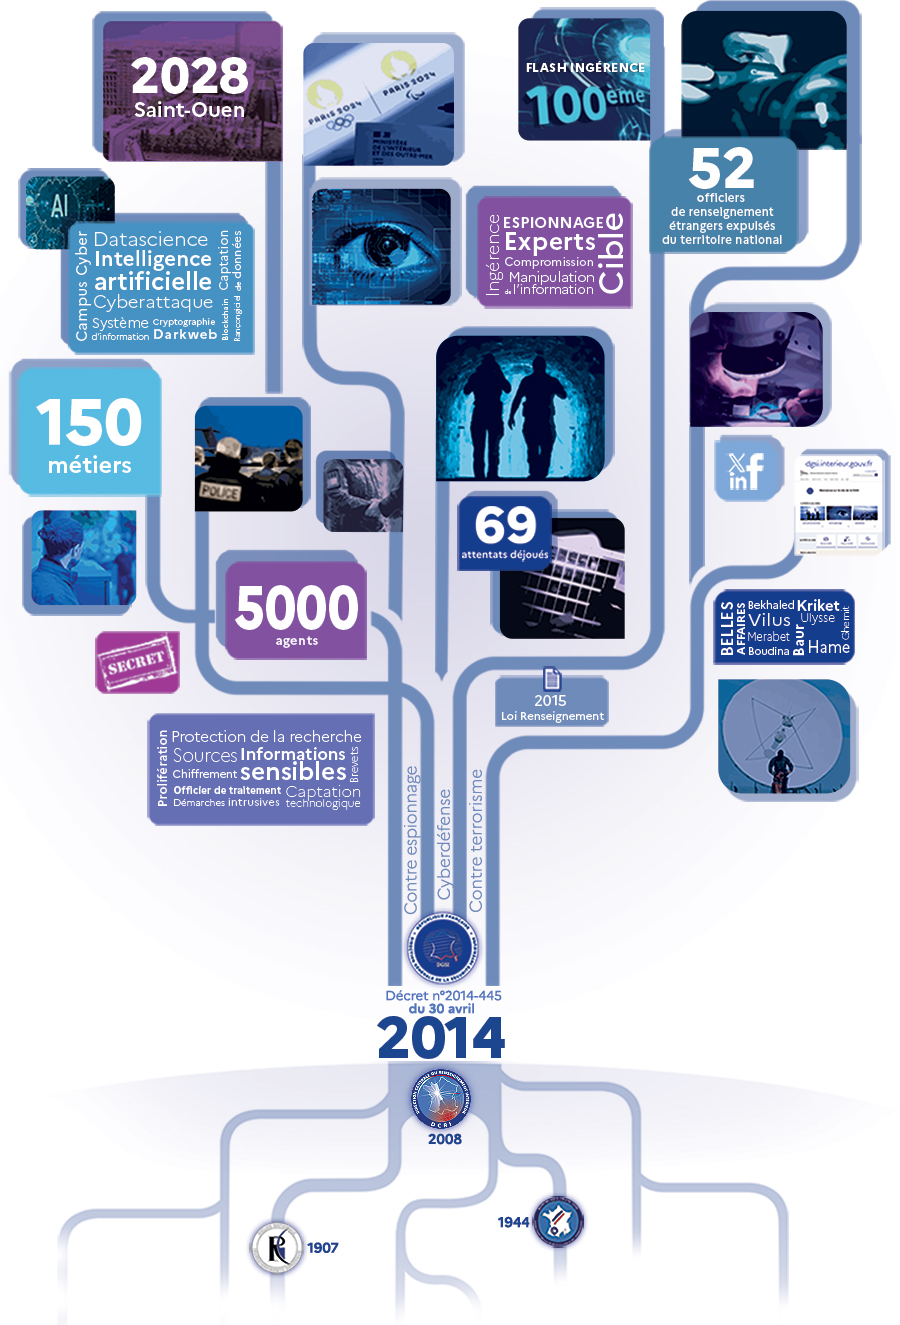 La DGSI fête ses 10 ans d'existence : infographie sous forme d'arbre reprenant les chiffres et images clés